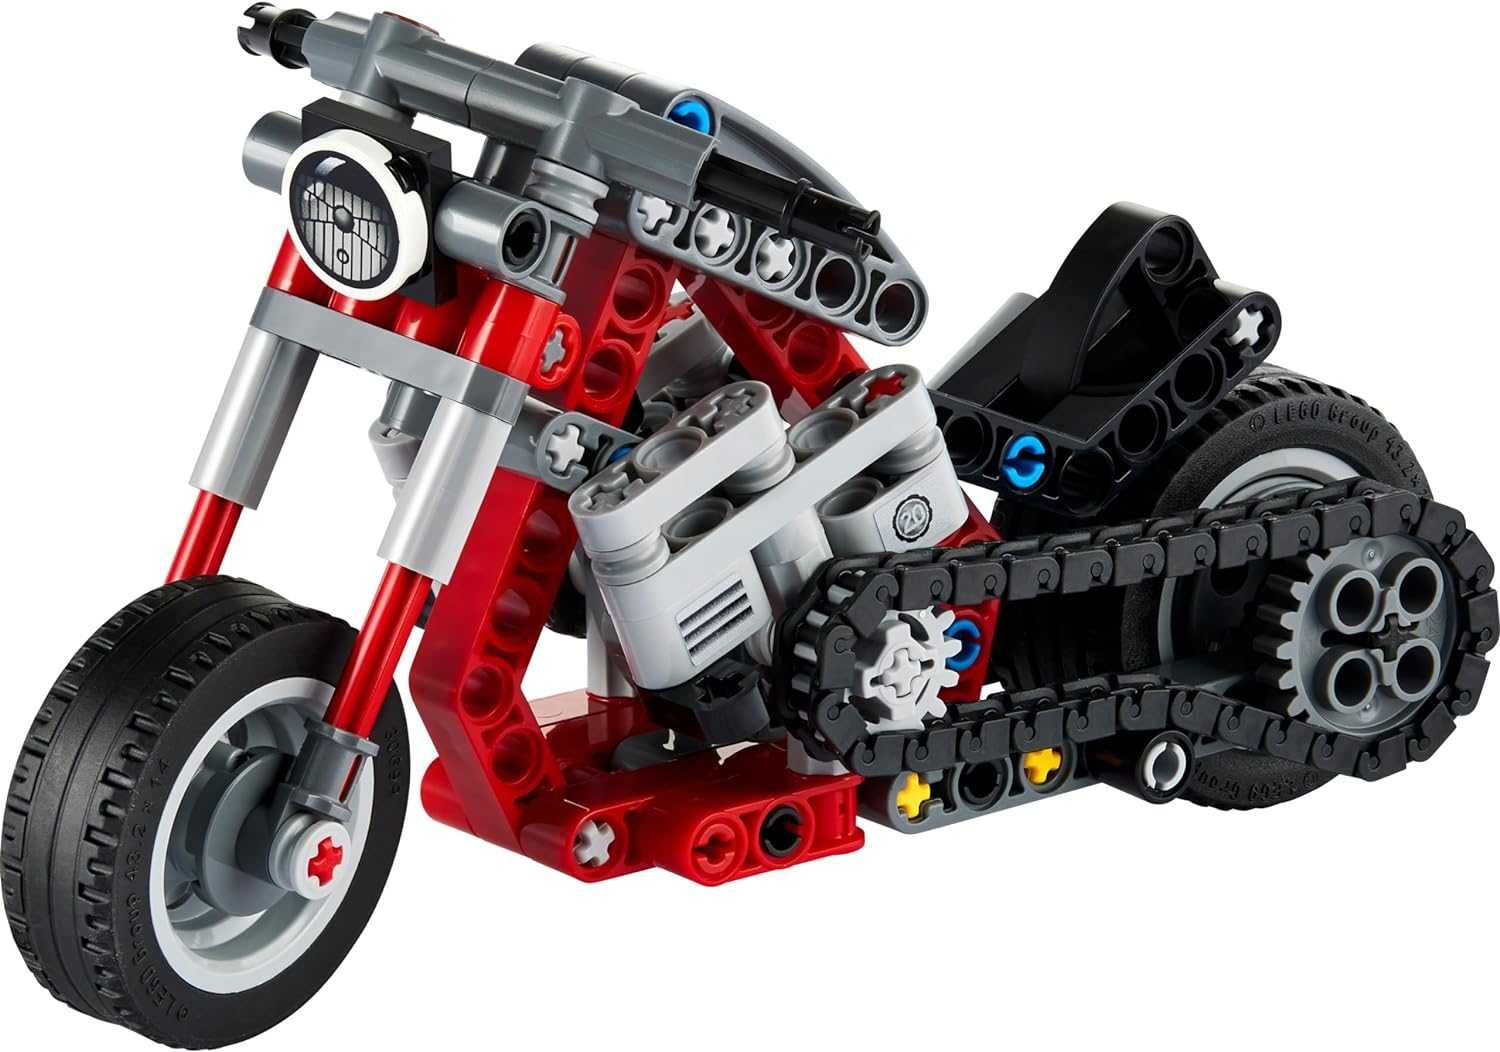 Klocki Lego Motor Motocykl 2 w 1 prezent